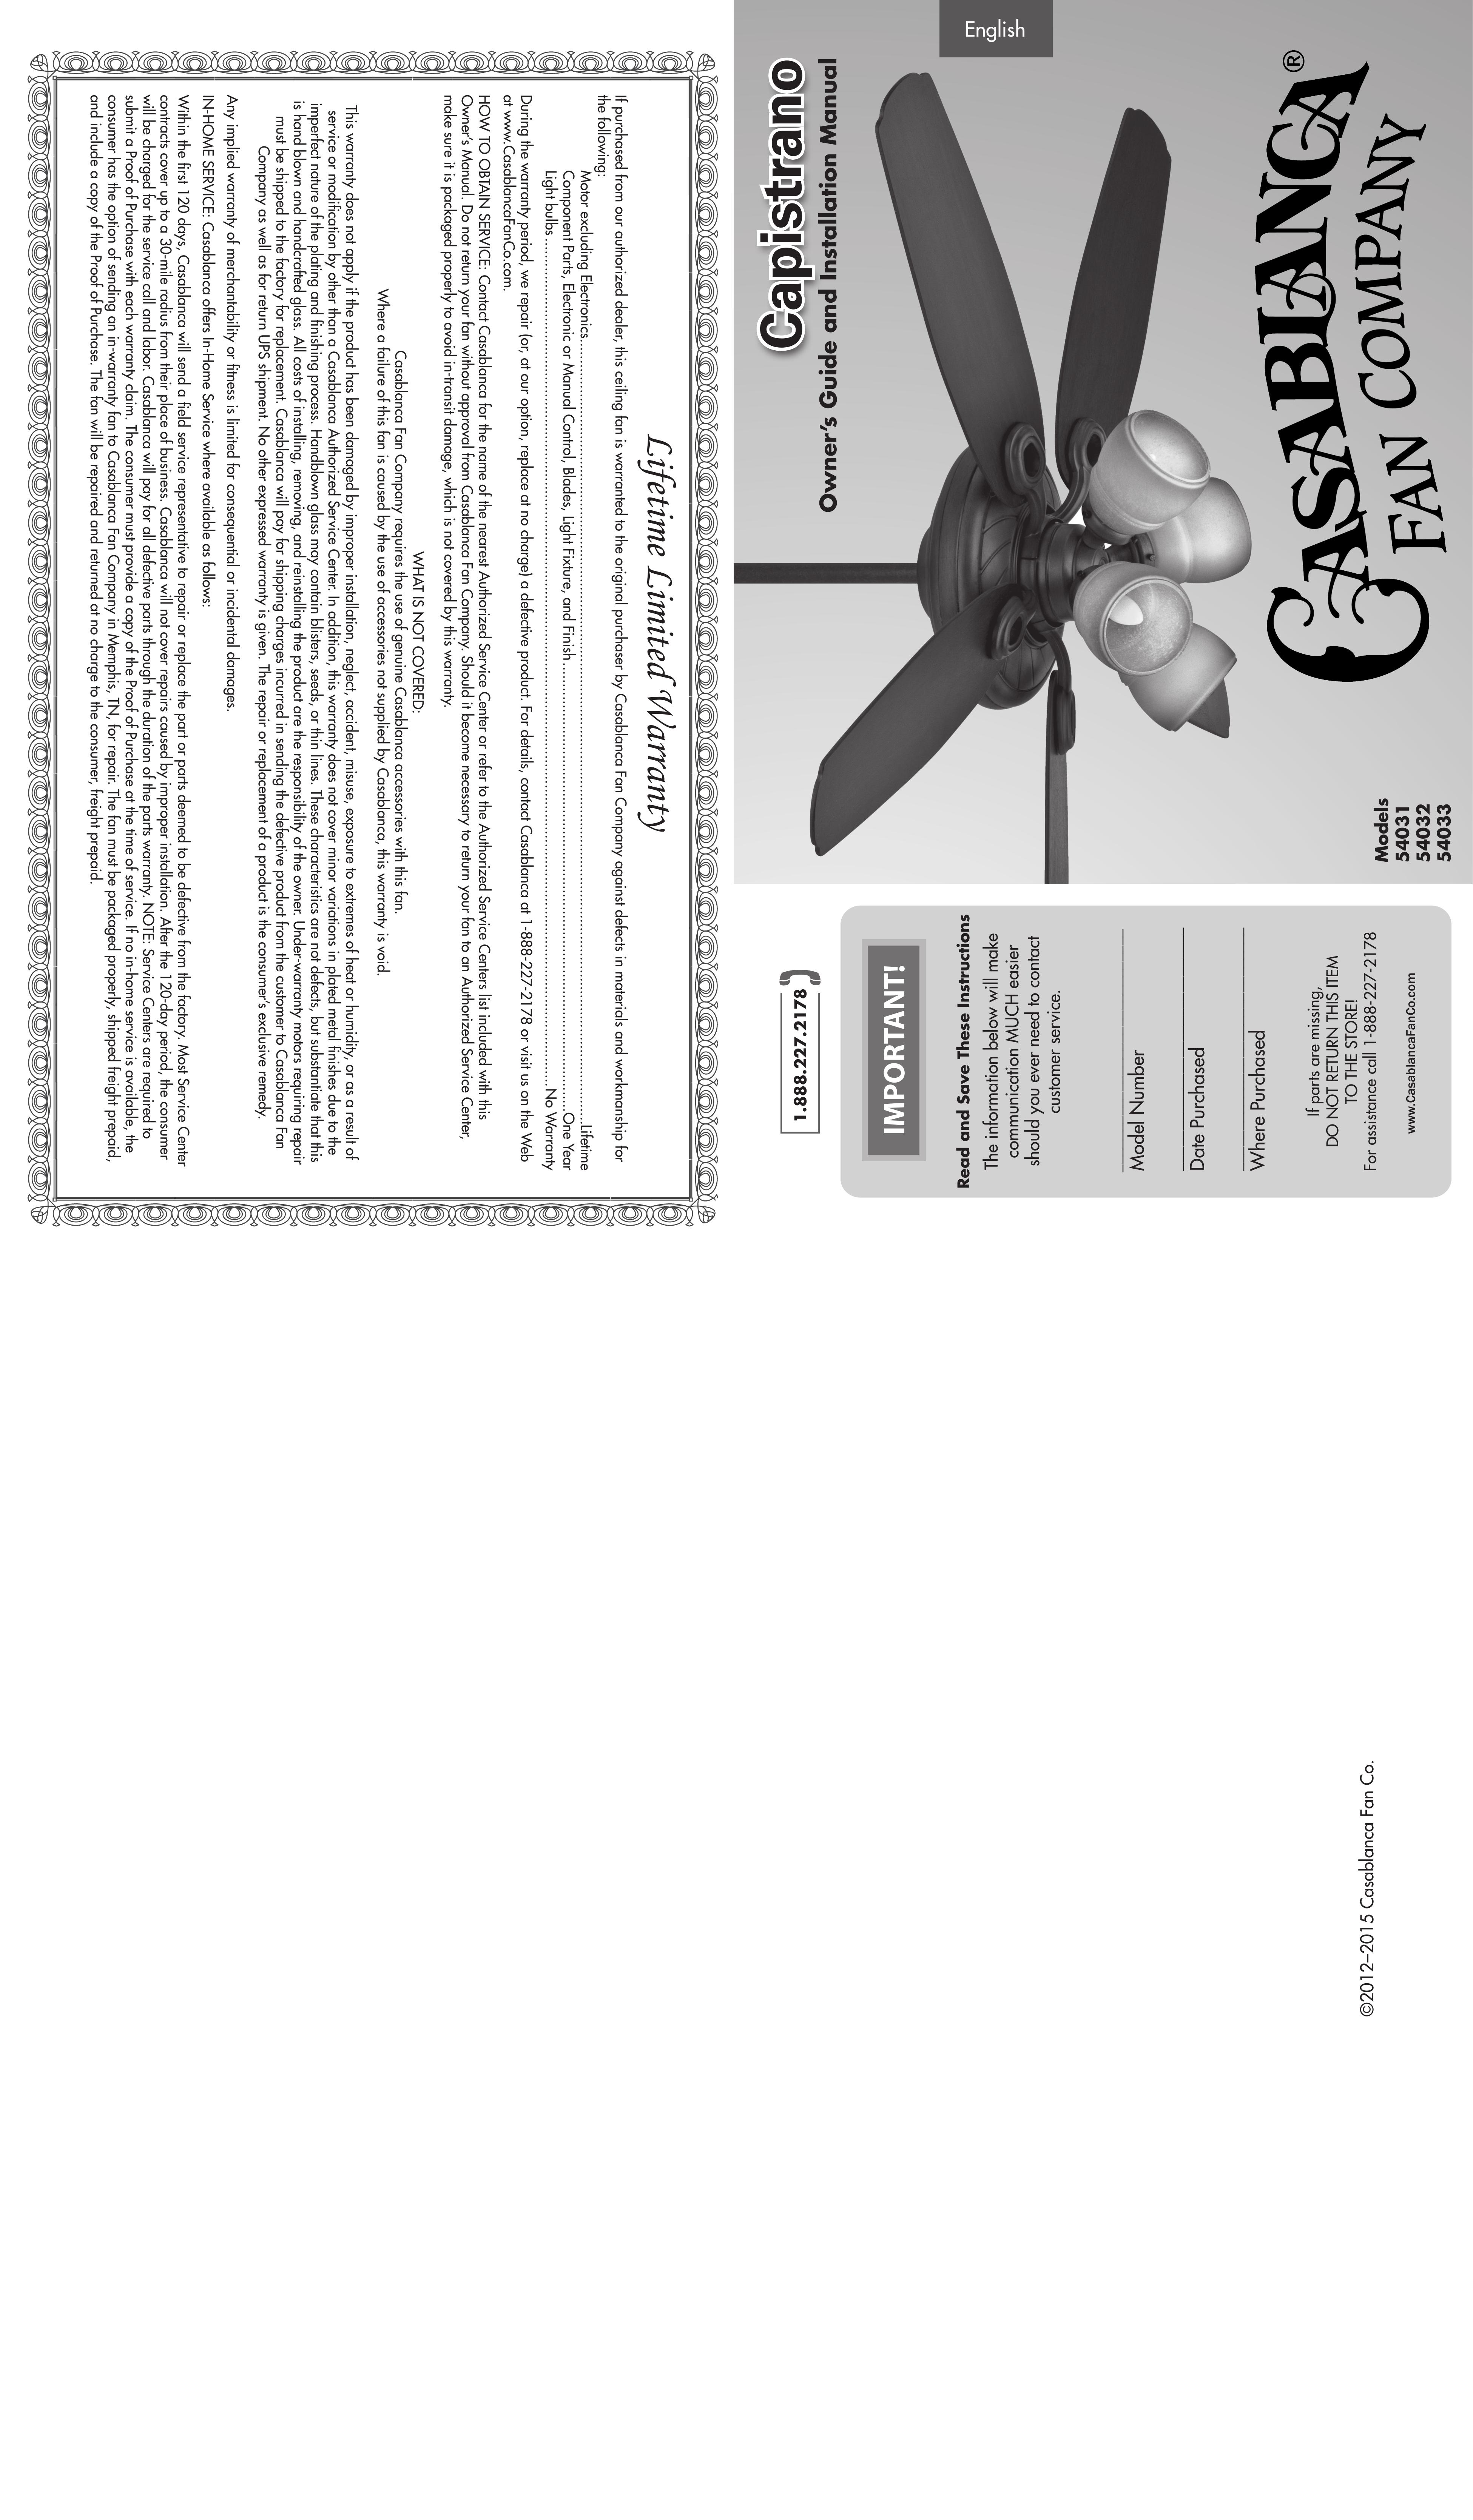 Casablanca Fan Company 54033 Outdoor Ceiling Fan User Manual